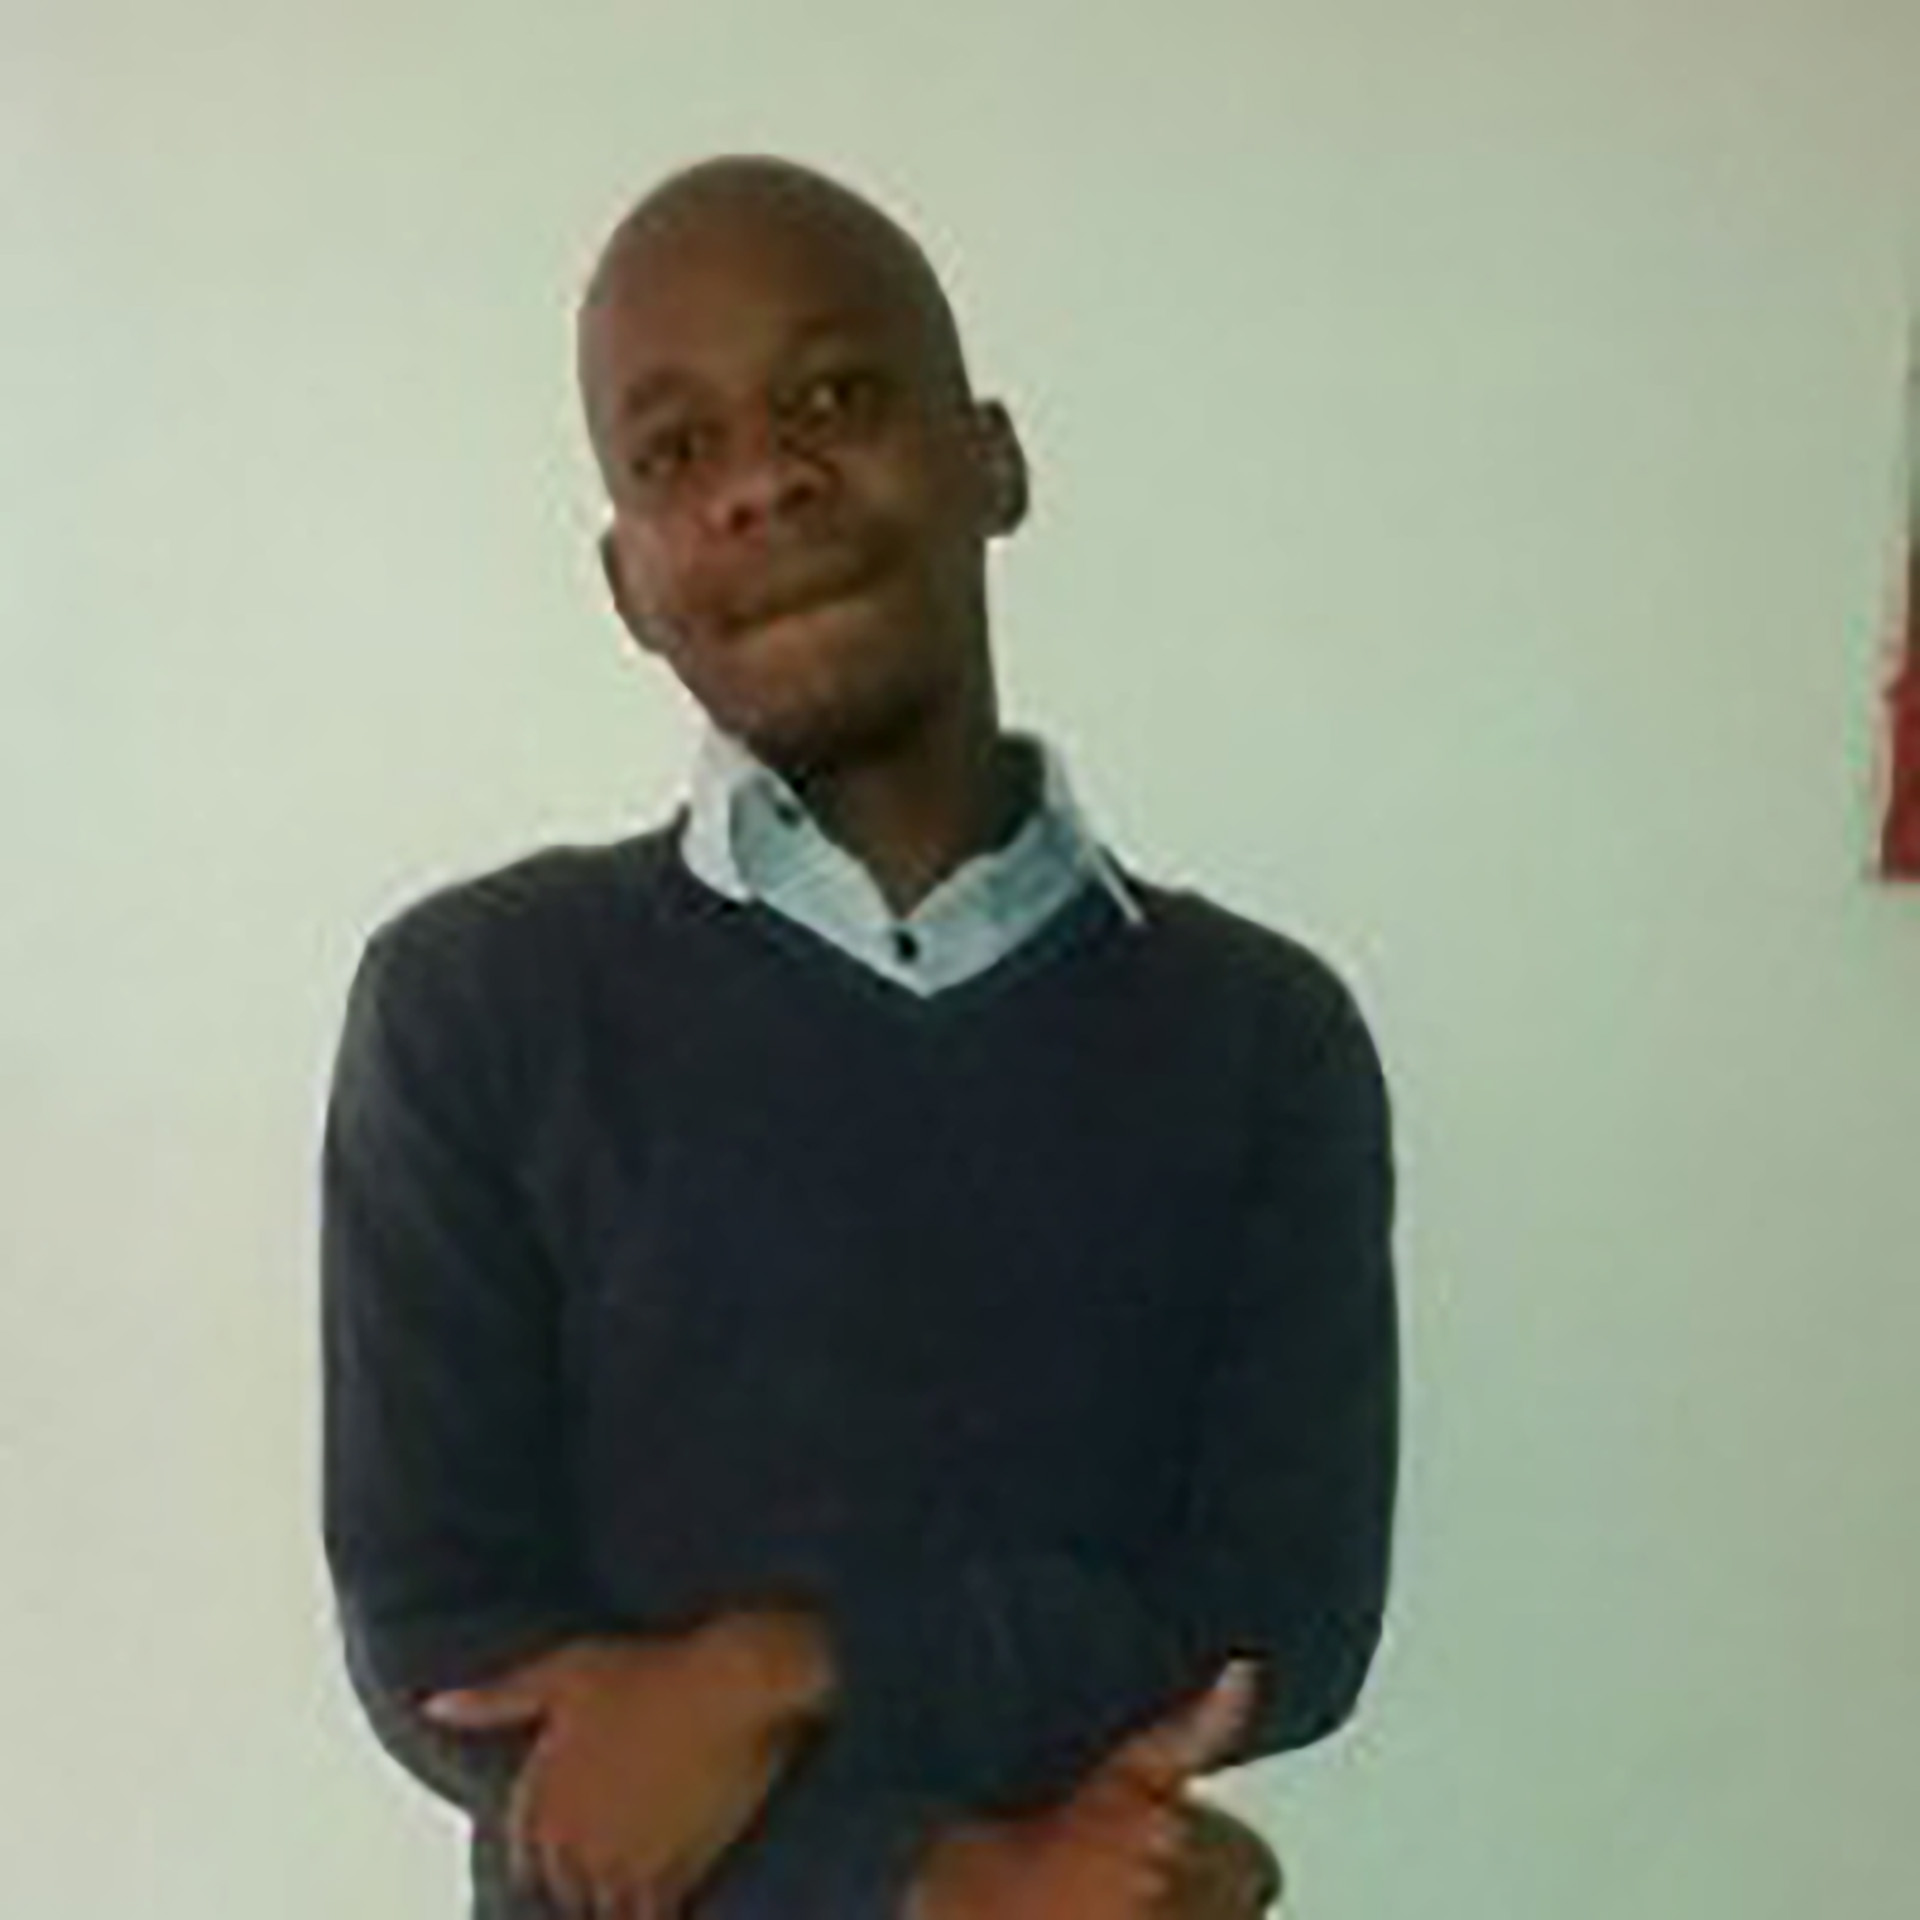 Mr Tshepo Selesho